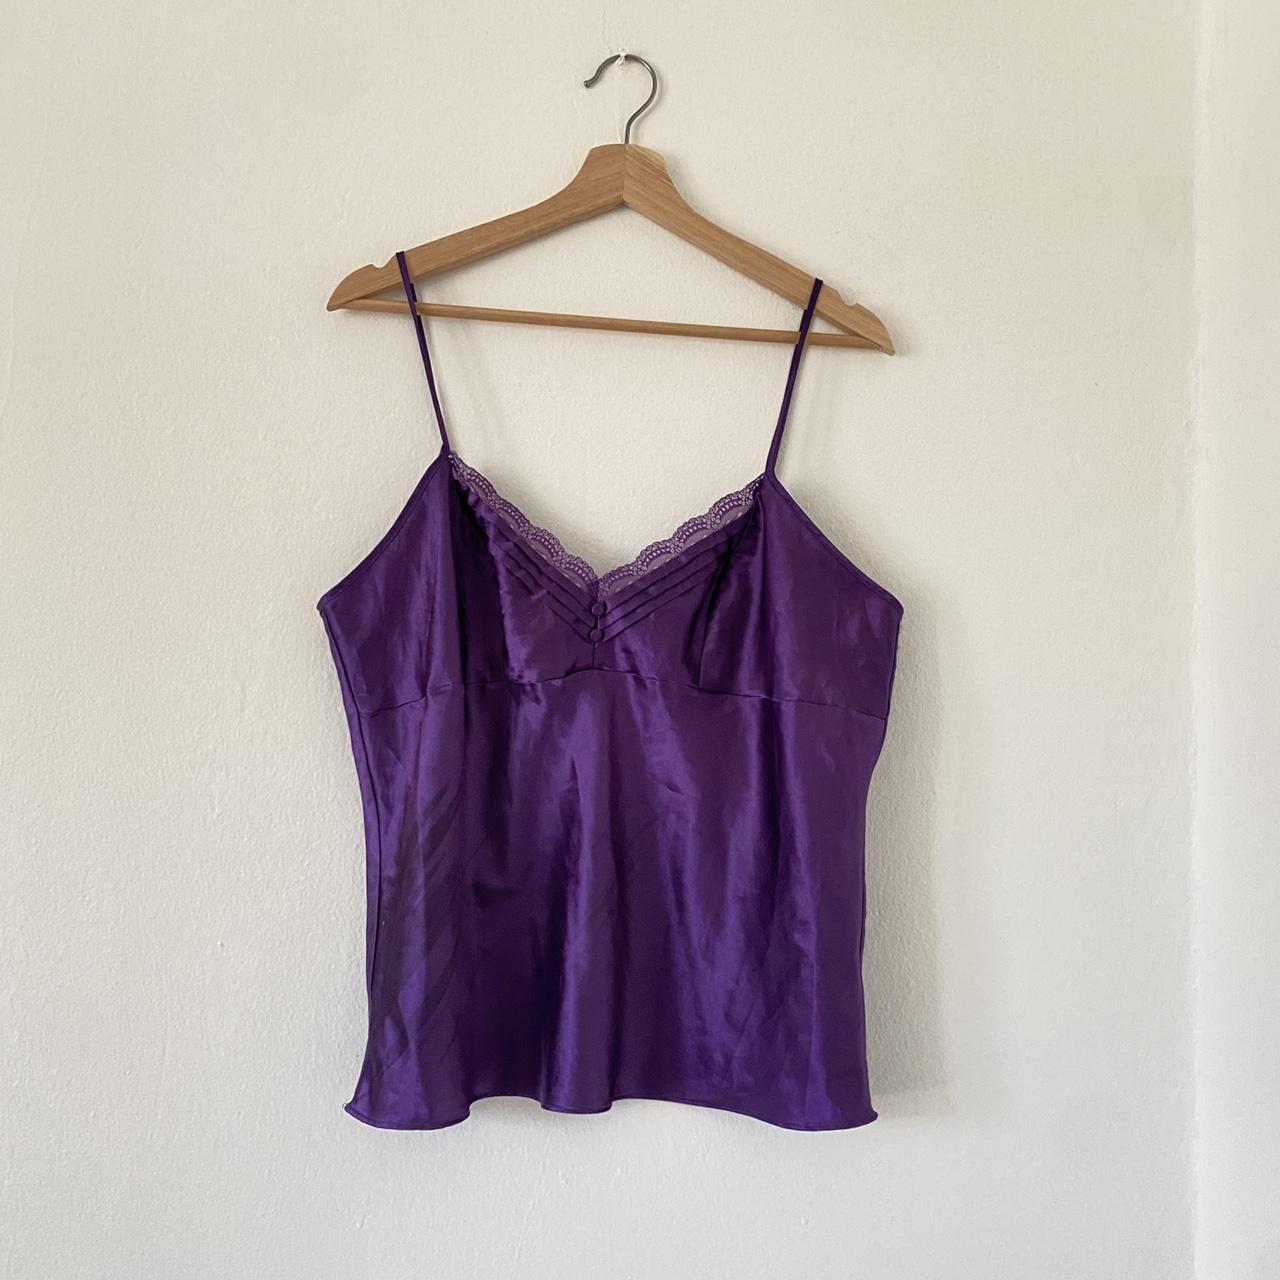 Gorgeous royal purple vintage lingerie cami 💜... - Depop